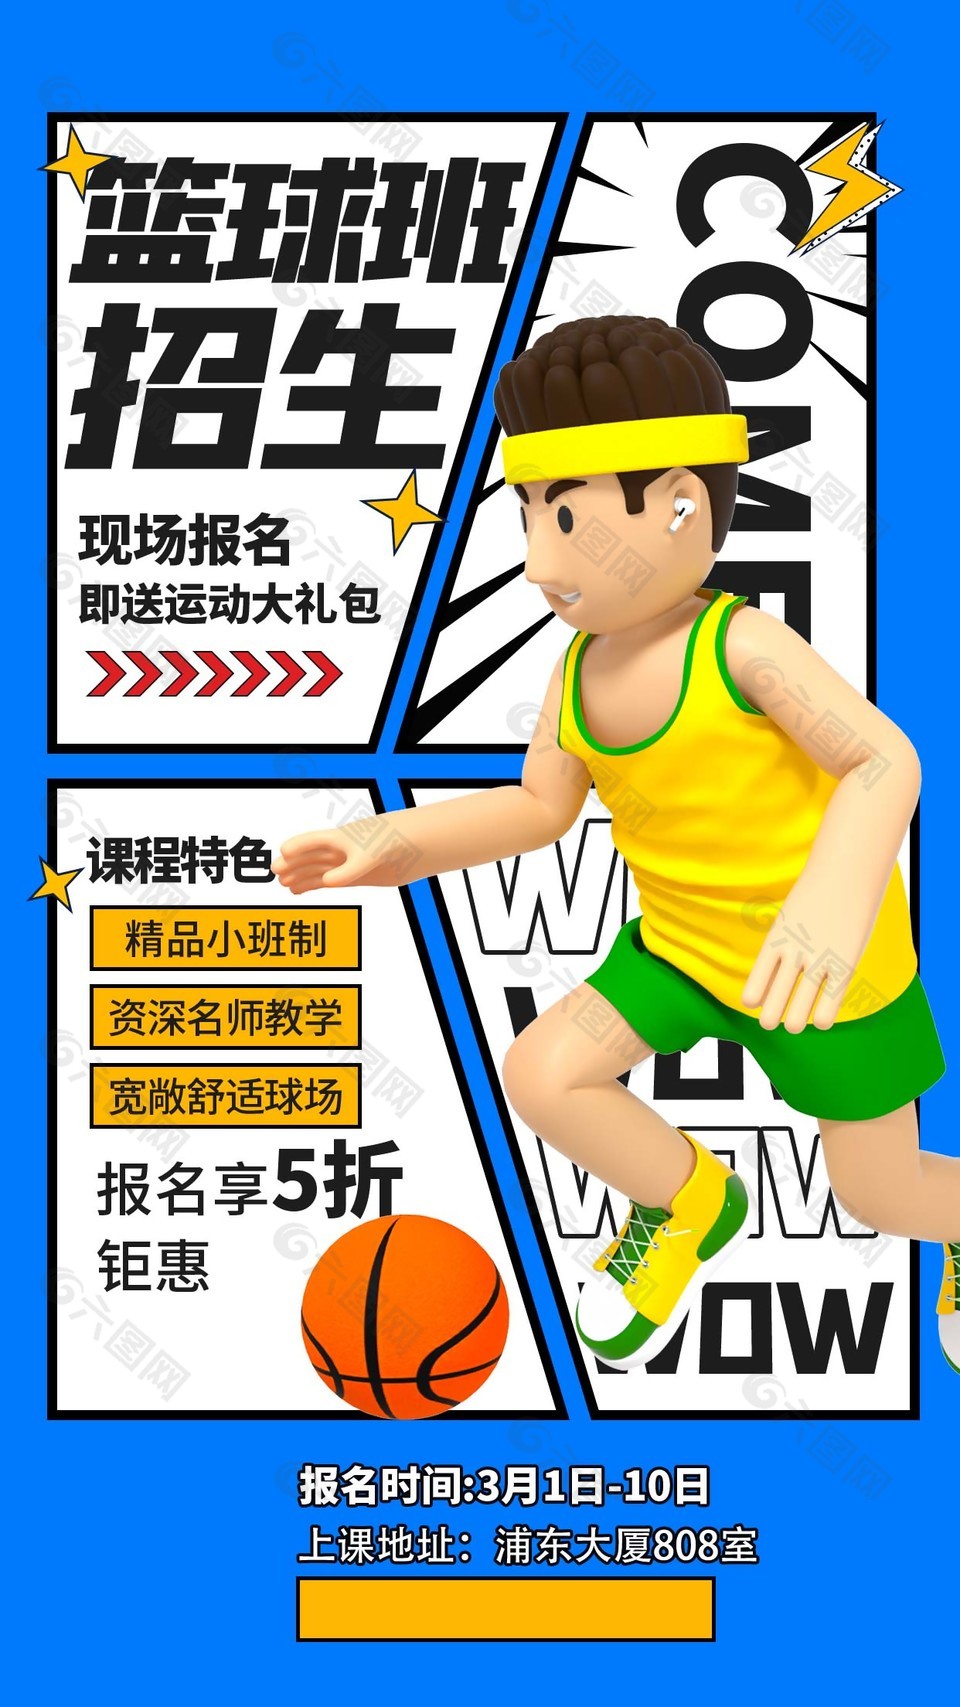 漫画风篮球班招生优惠活动海报设计